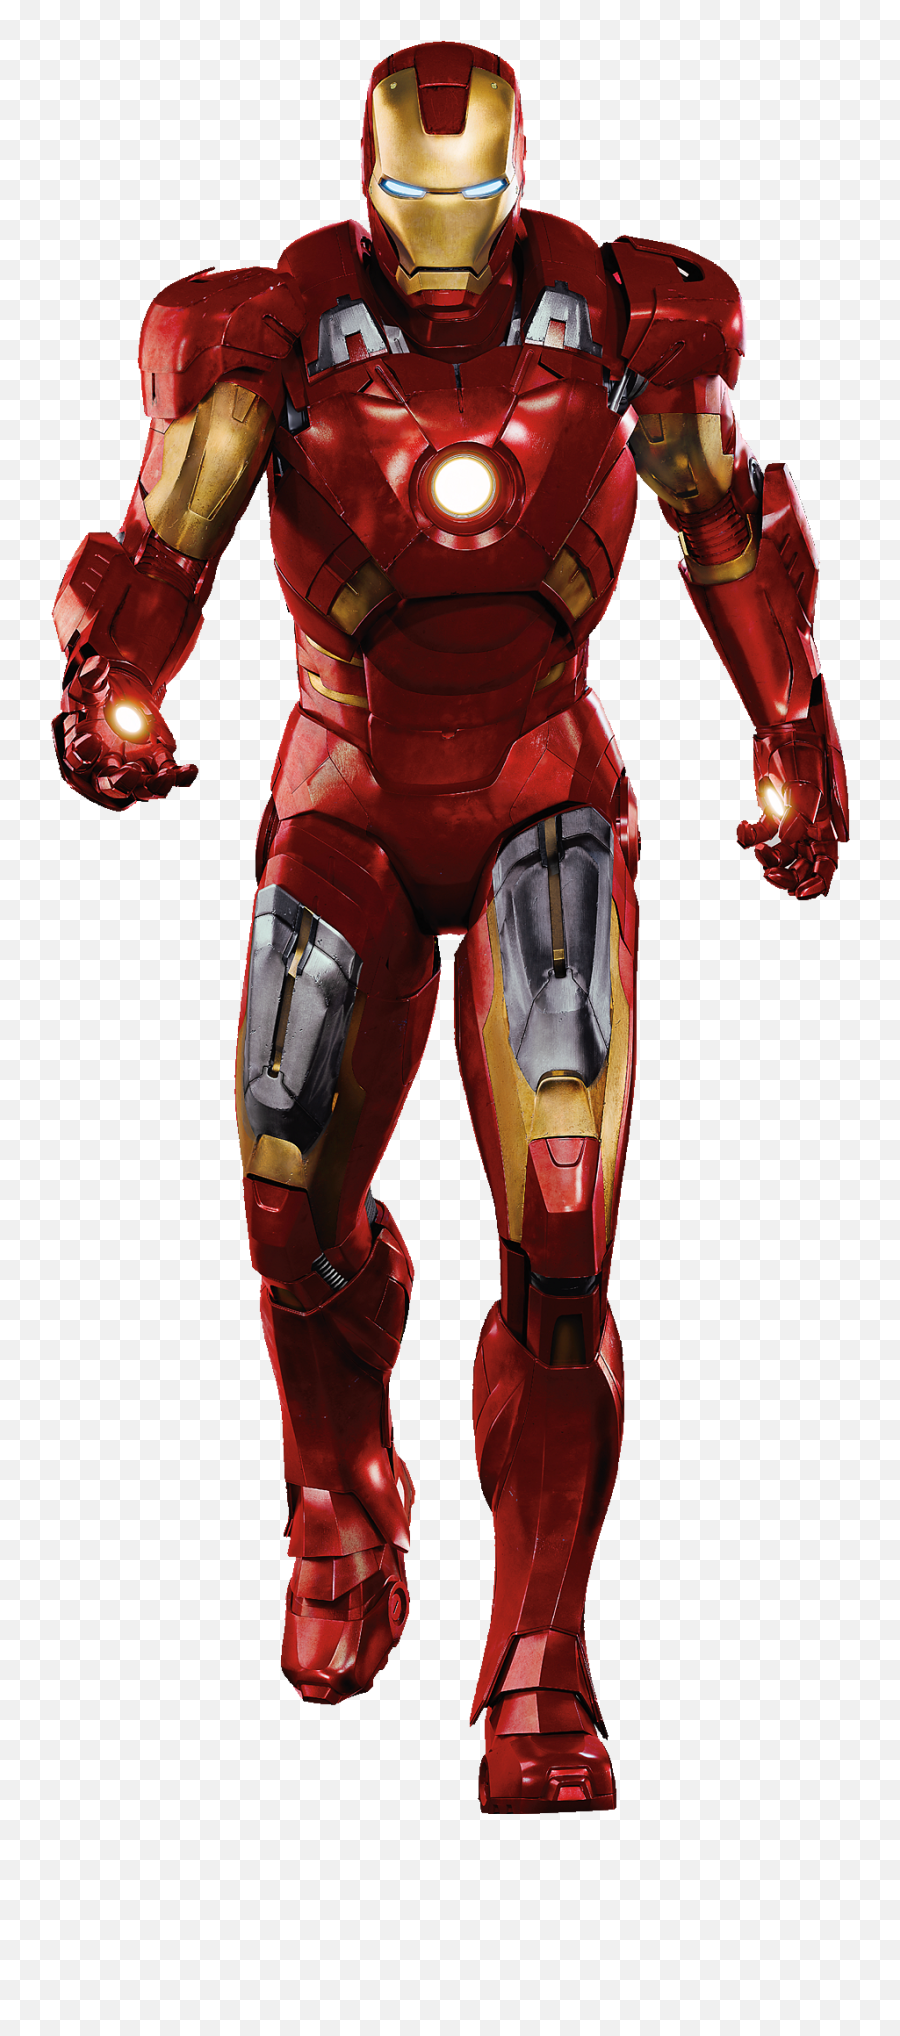 Iron Man Png Picture - Iron Man Png,Iron Man Png